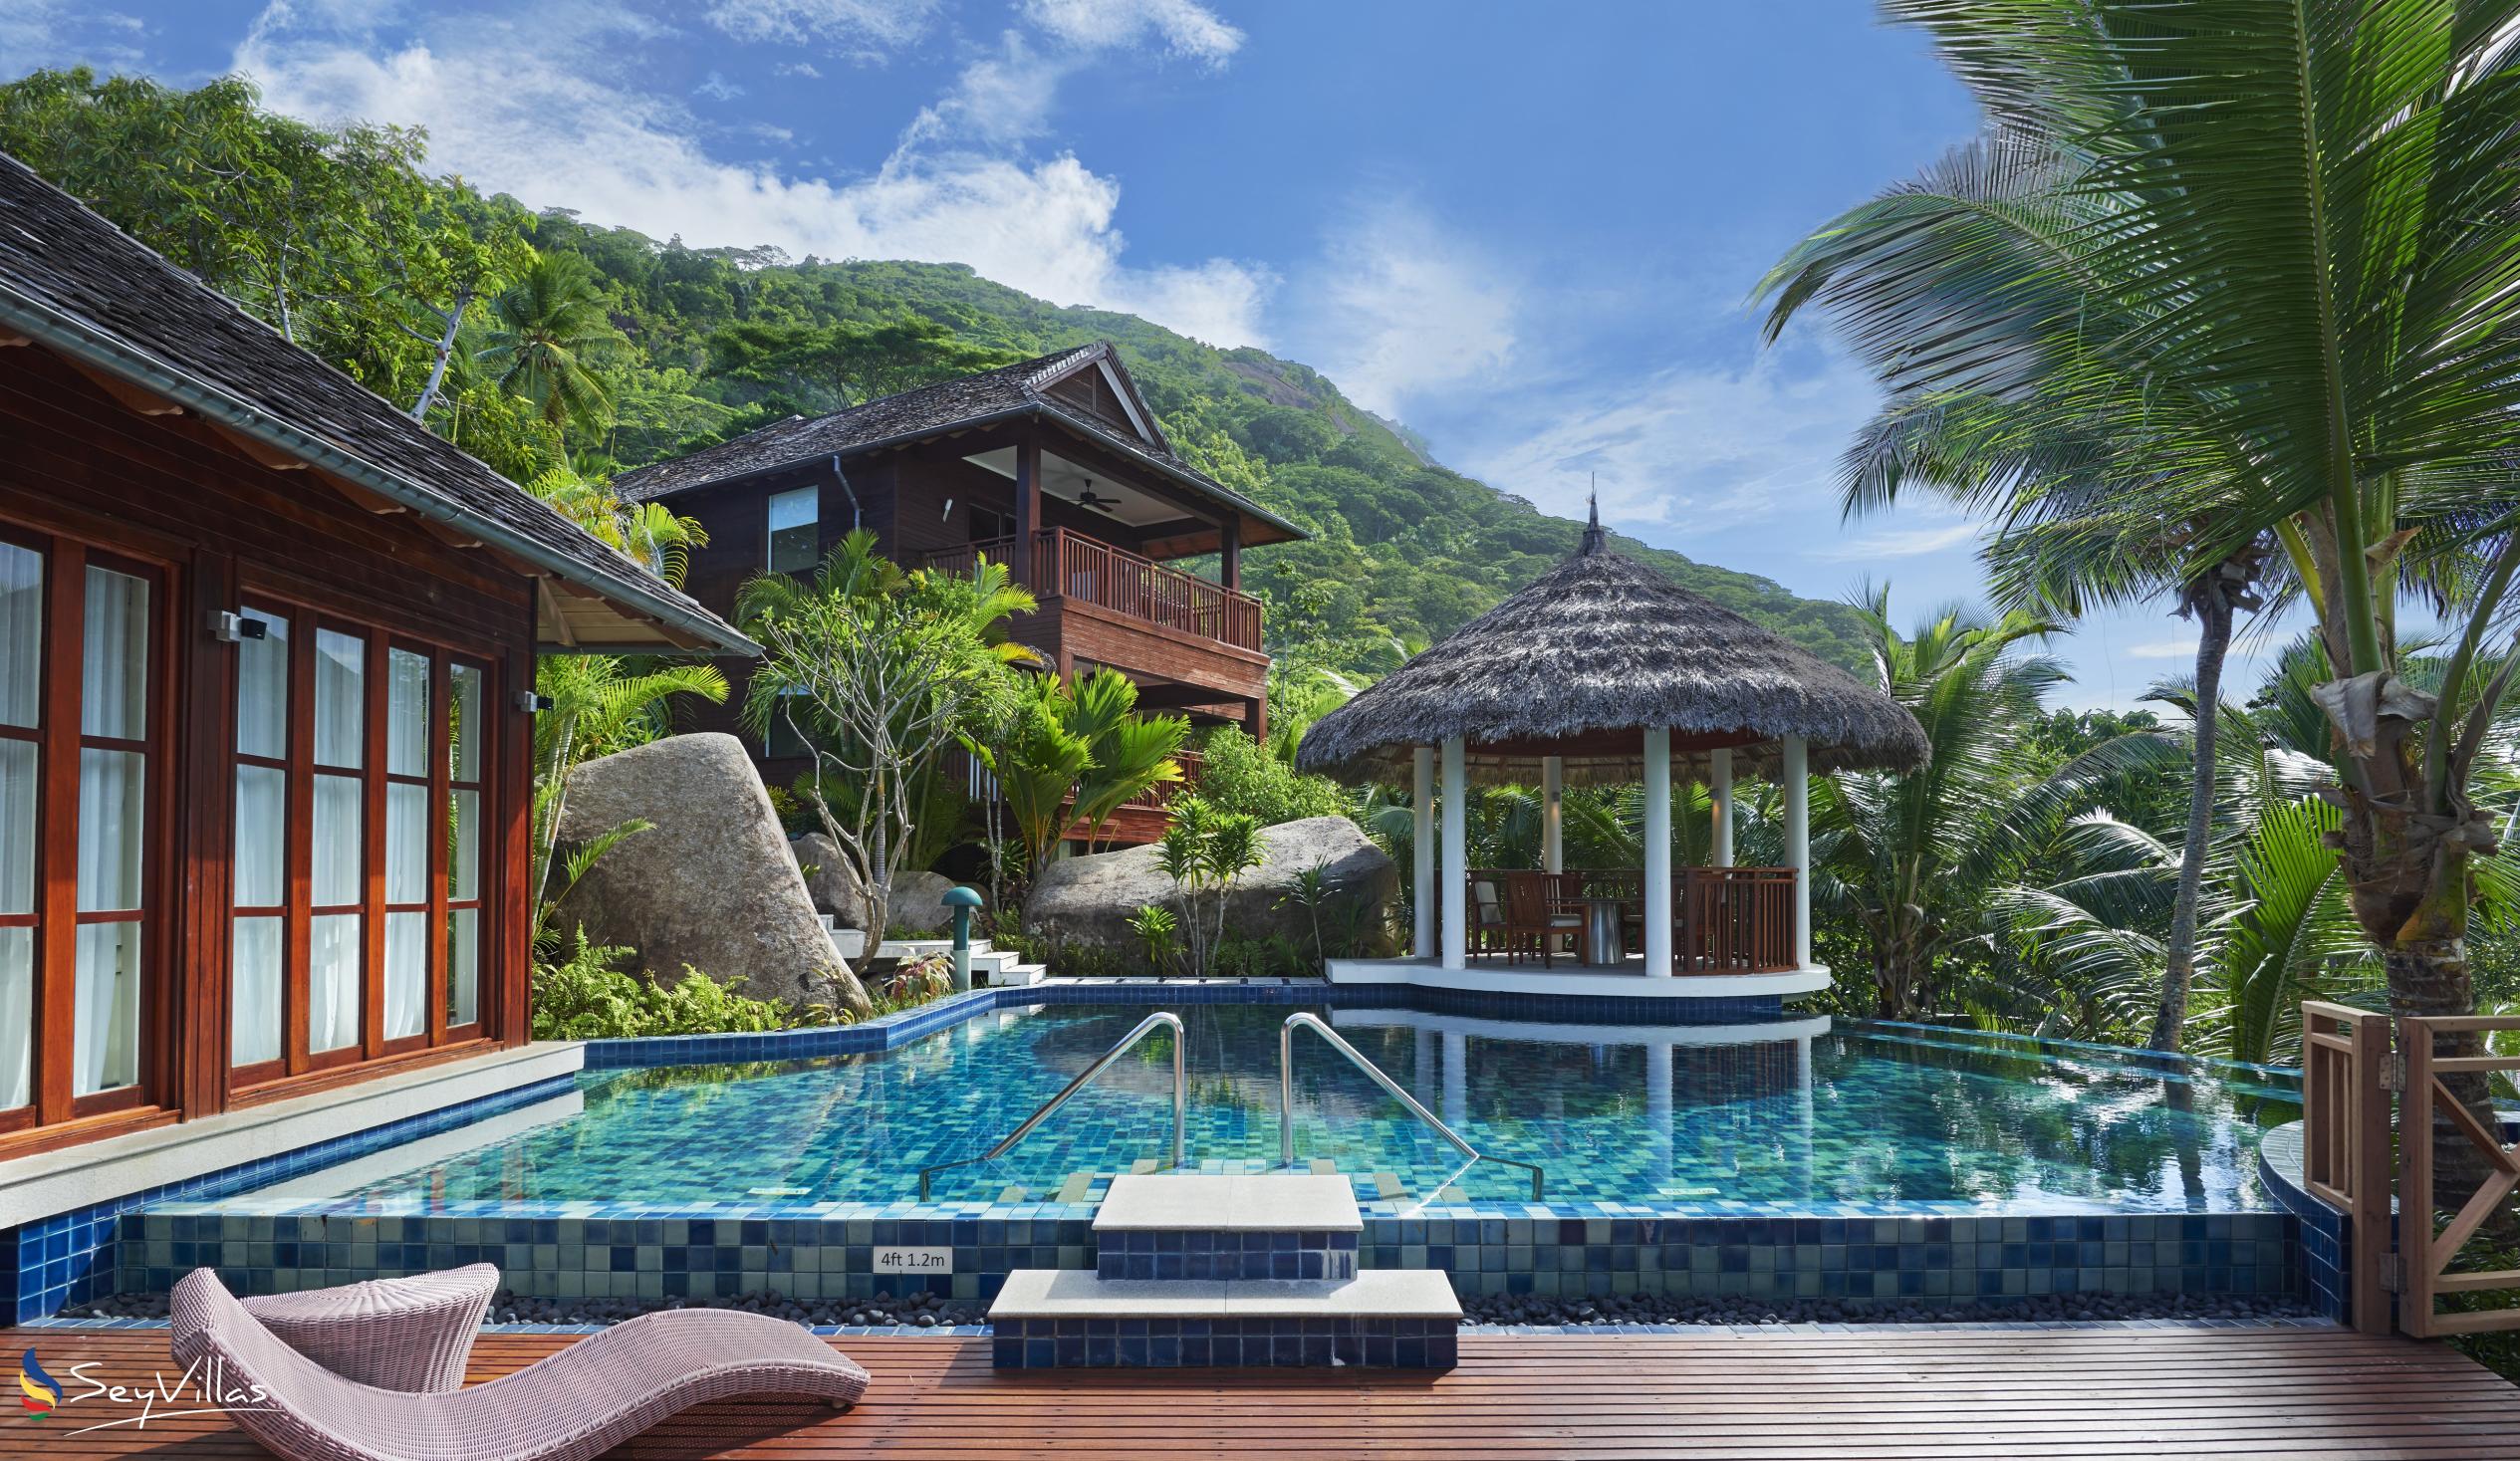 Foto 76: Hilton Seychelles Labriz Resort & Spa - Two Bedroom Silhouette Estate - Silhouette Island (Seychellen)